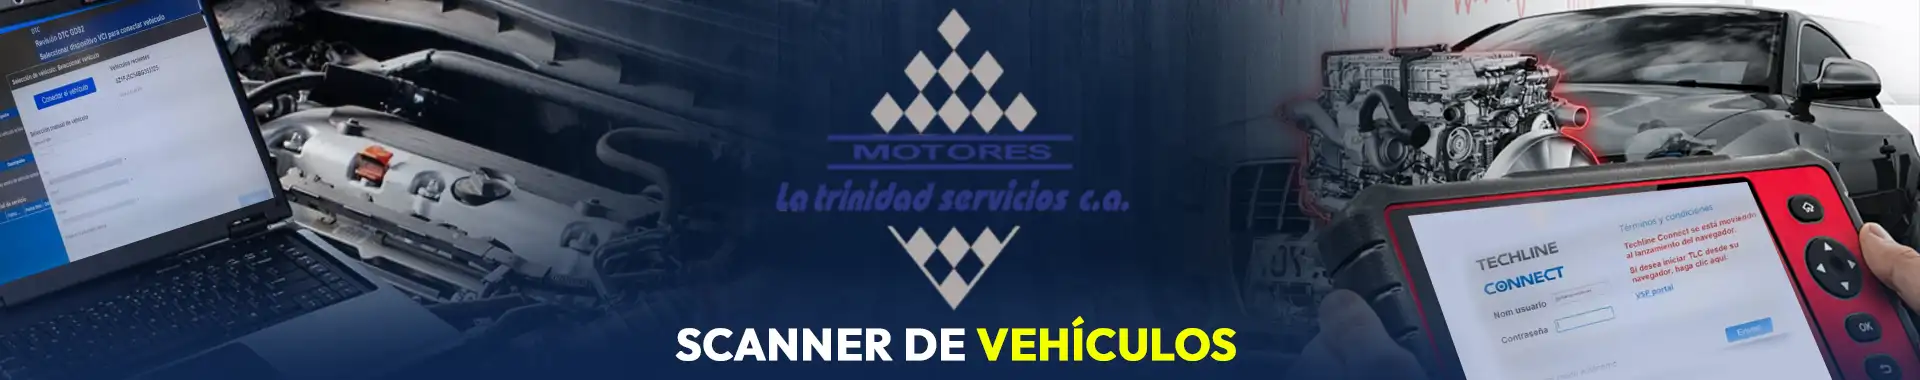 Imagen 6 del perfil de Motores La Trinidad - Servicios